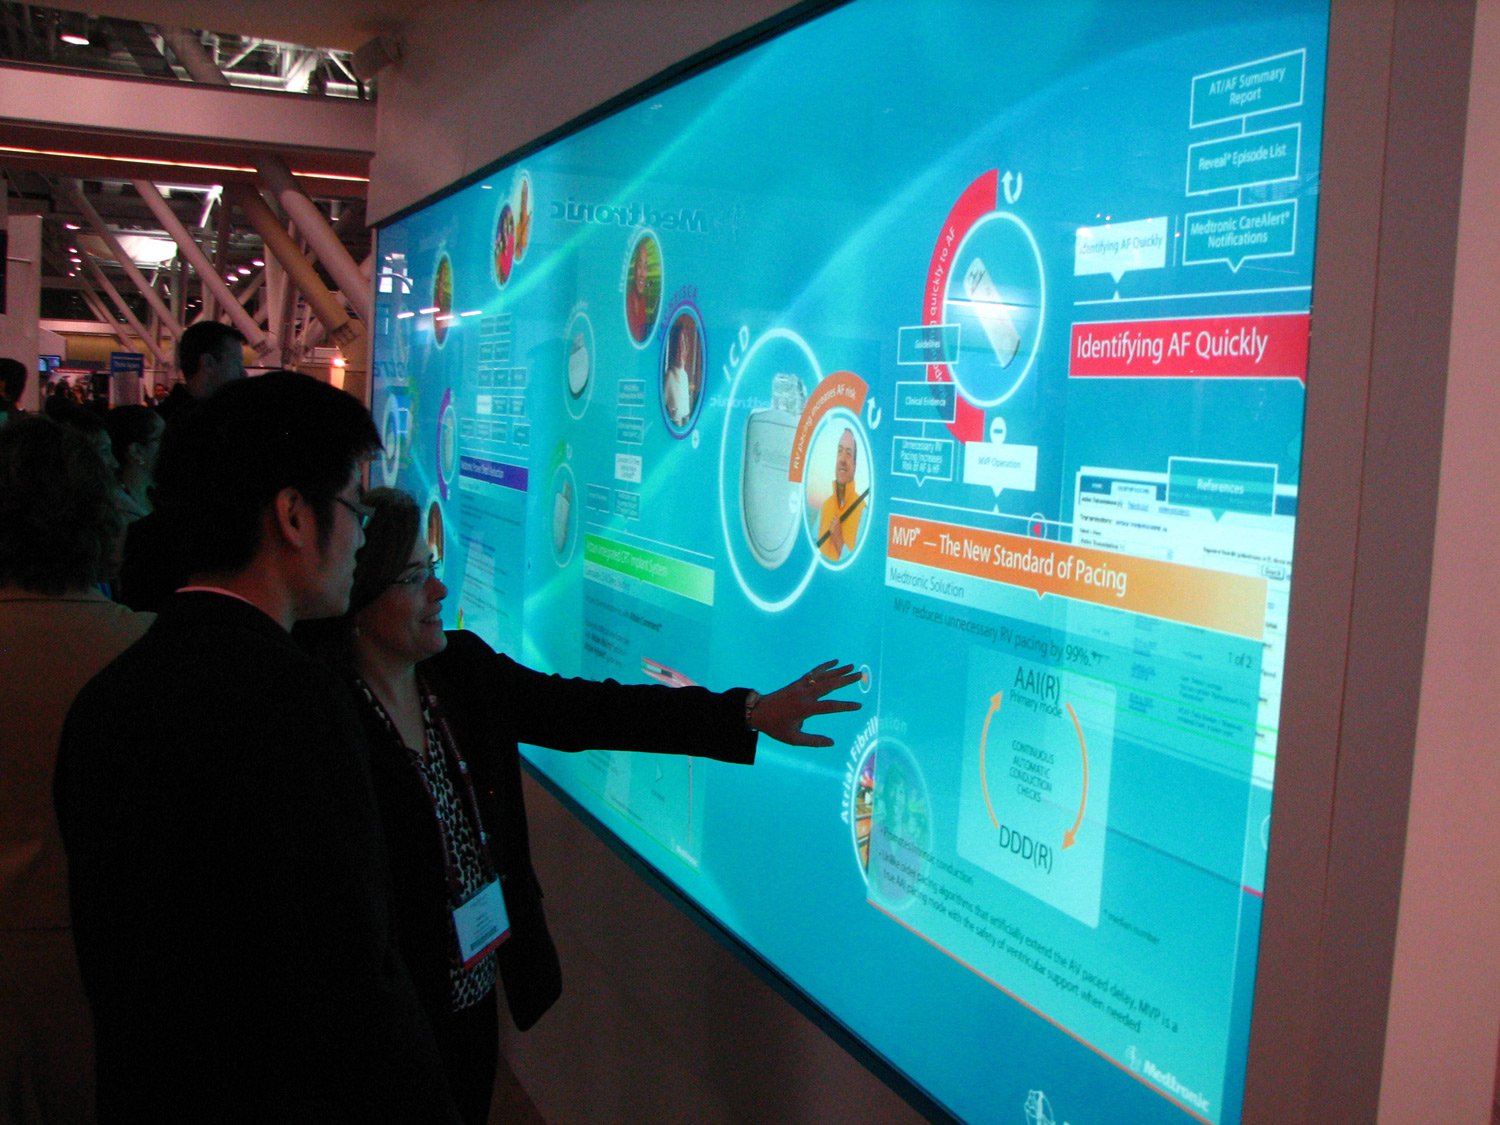 Интерактивный фрагмент. Интерактивная стена IWALL. Интерактивная сенсорная панель. Интерактивные сенсорные панели на выставках. Интерактивный экран на стене.